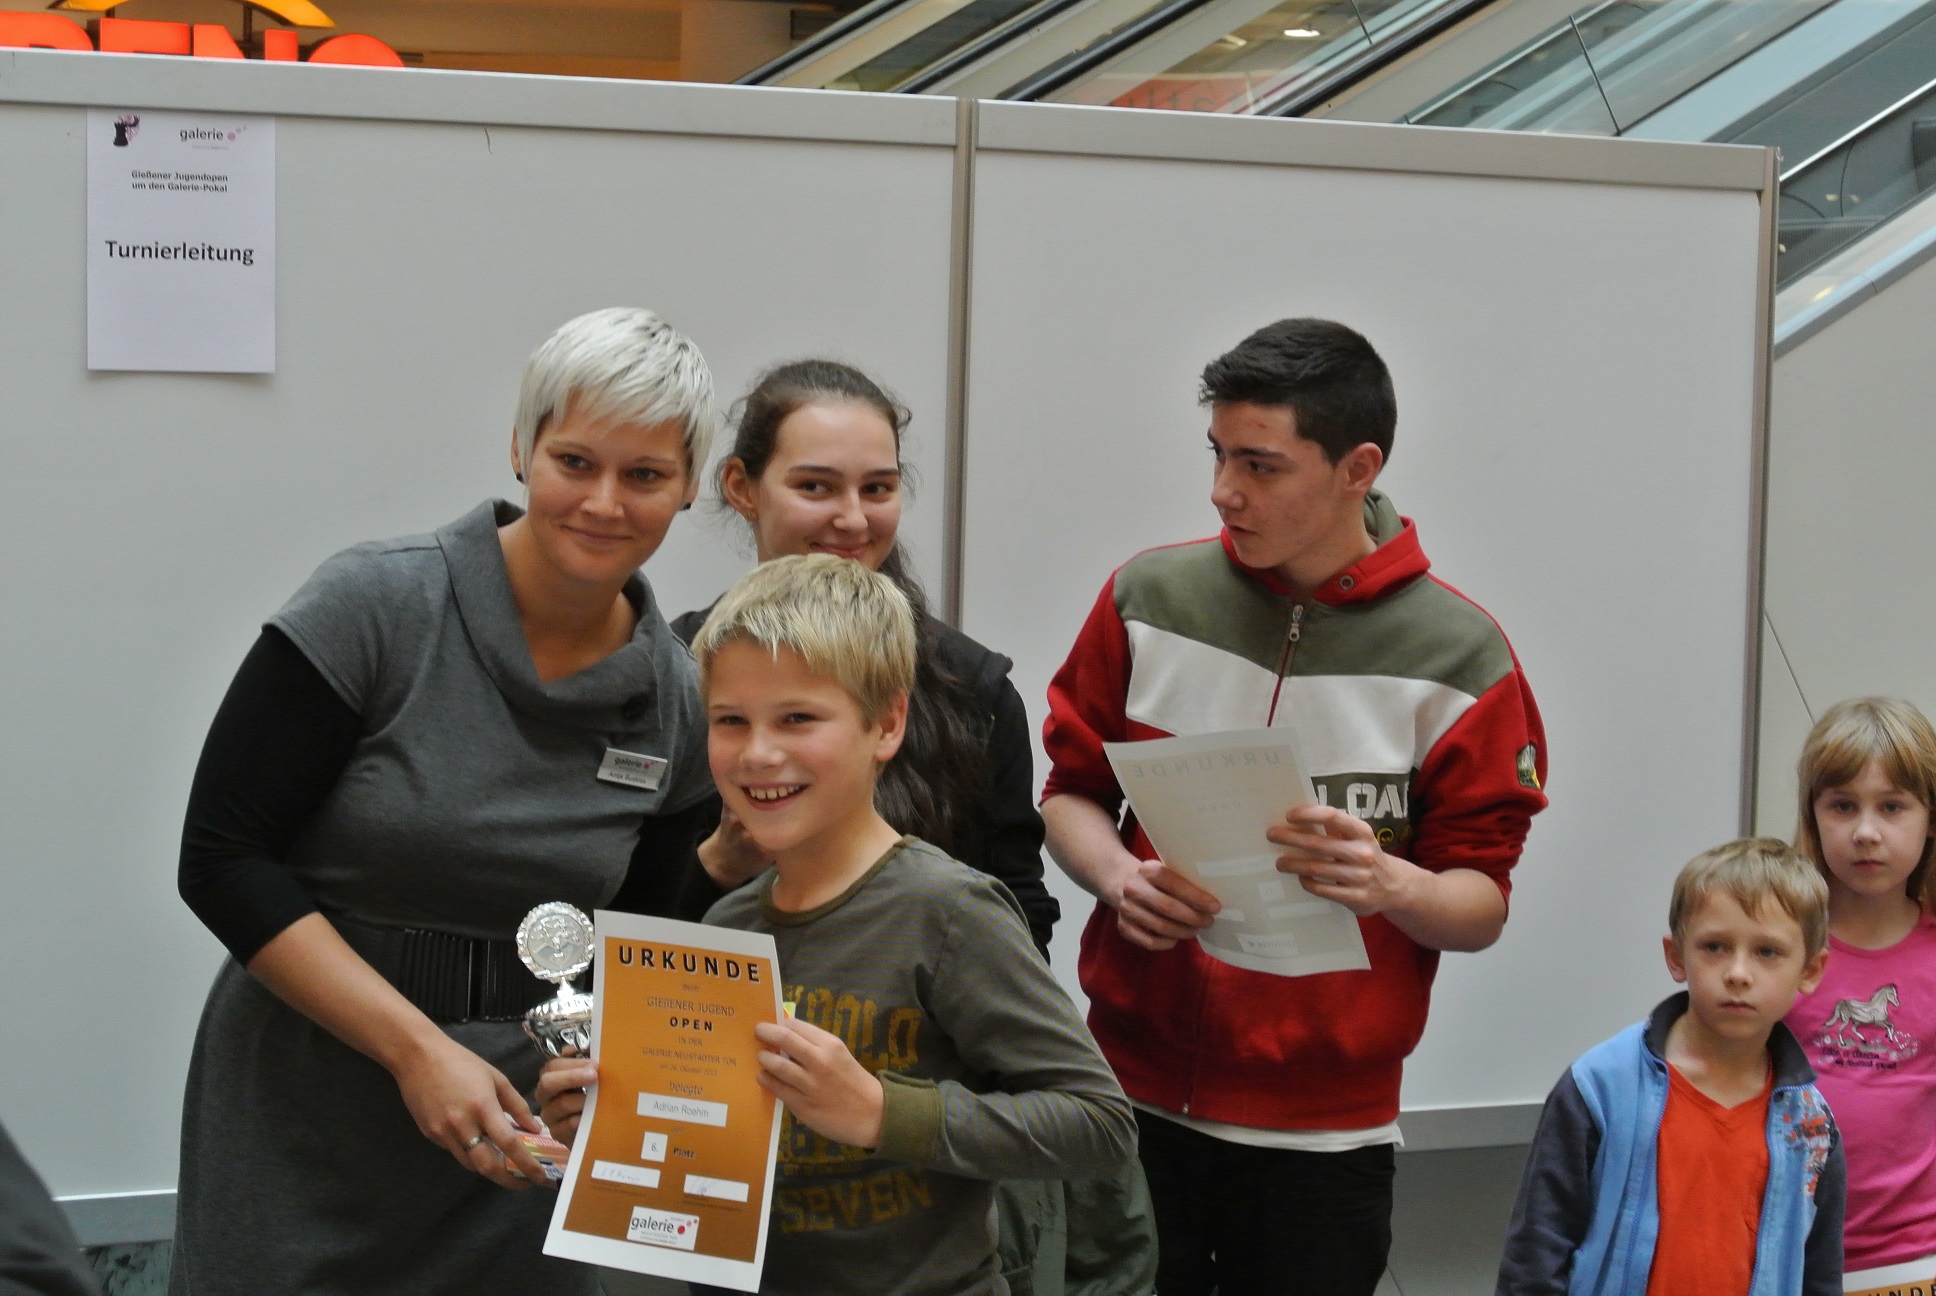 Adrian R�hm (vorne im Bild) gewinnt das U10-Turnier der Galeria Kaufhof und zeigt stolz seine Urkunde